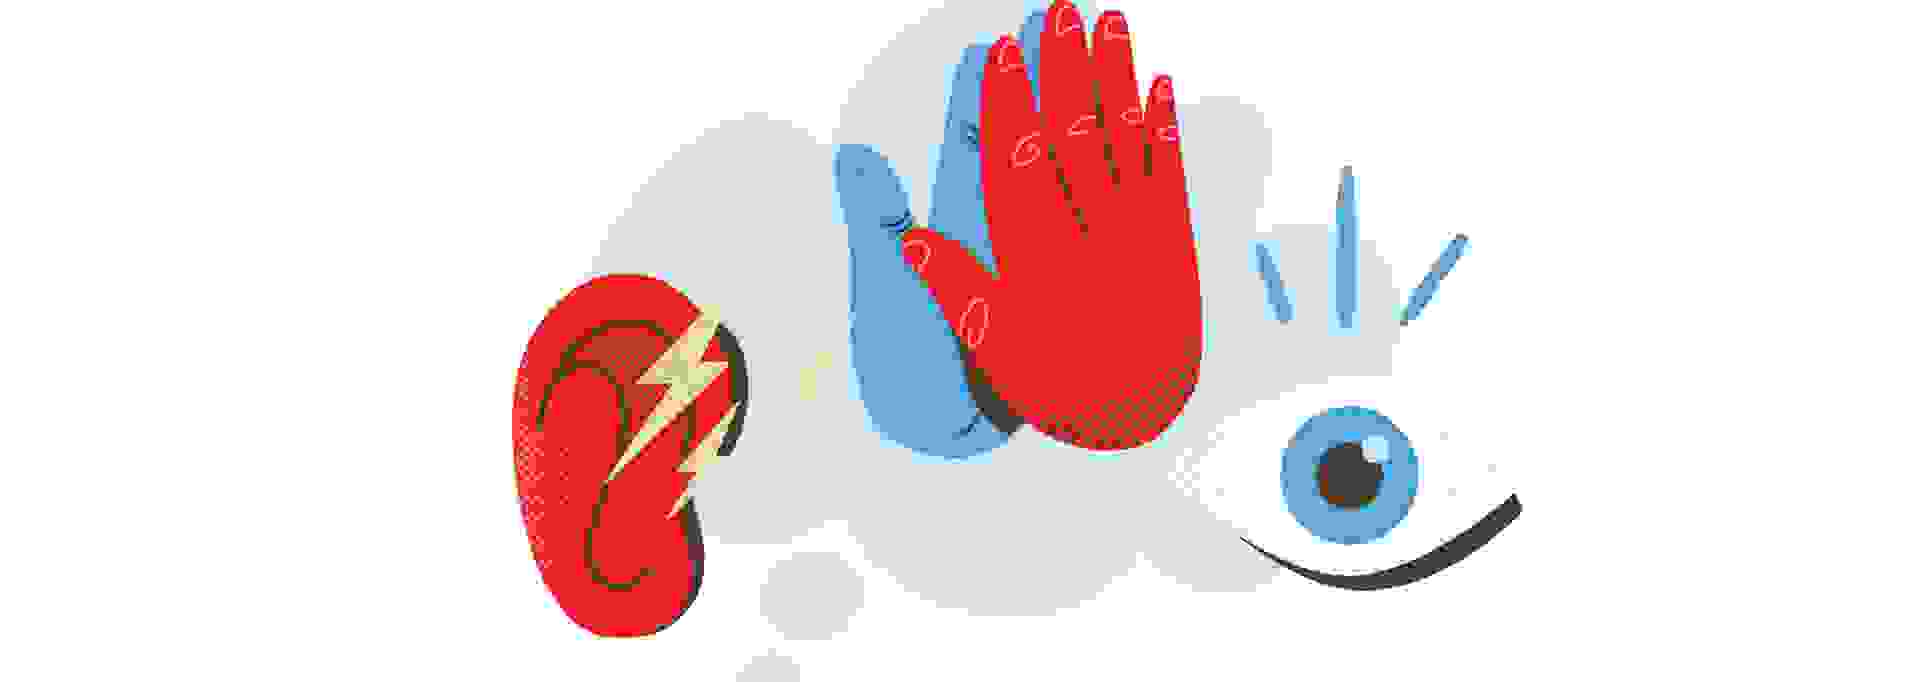 Kuvassa symboleita: punainen käsi, punainen korva, silmä, kaksi kättä yhdessä